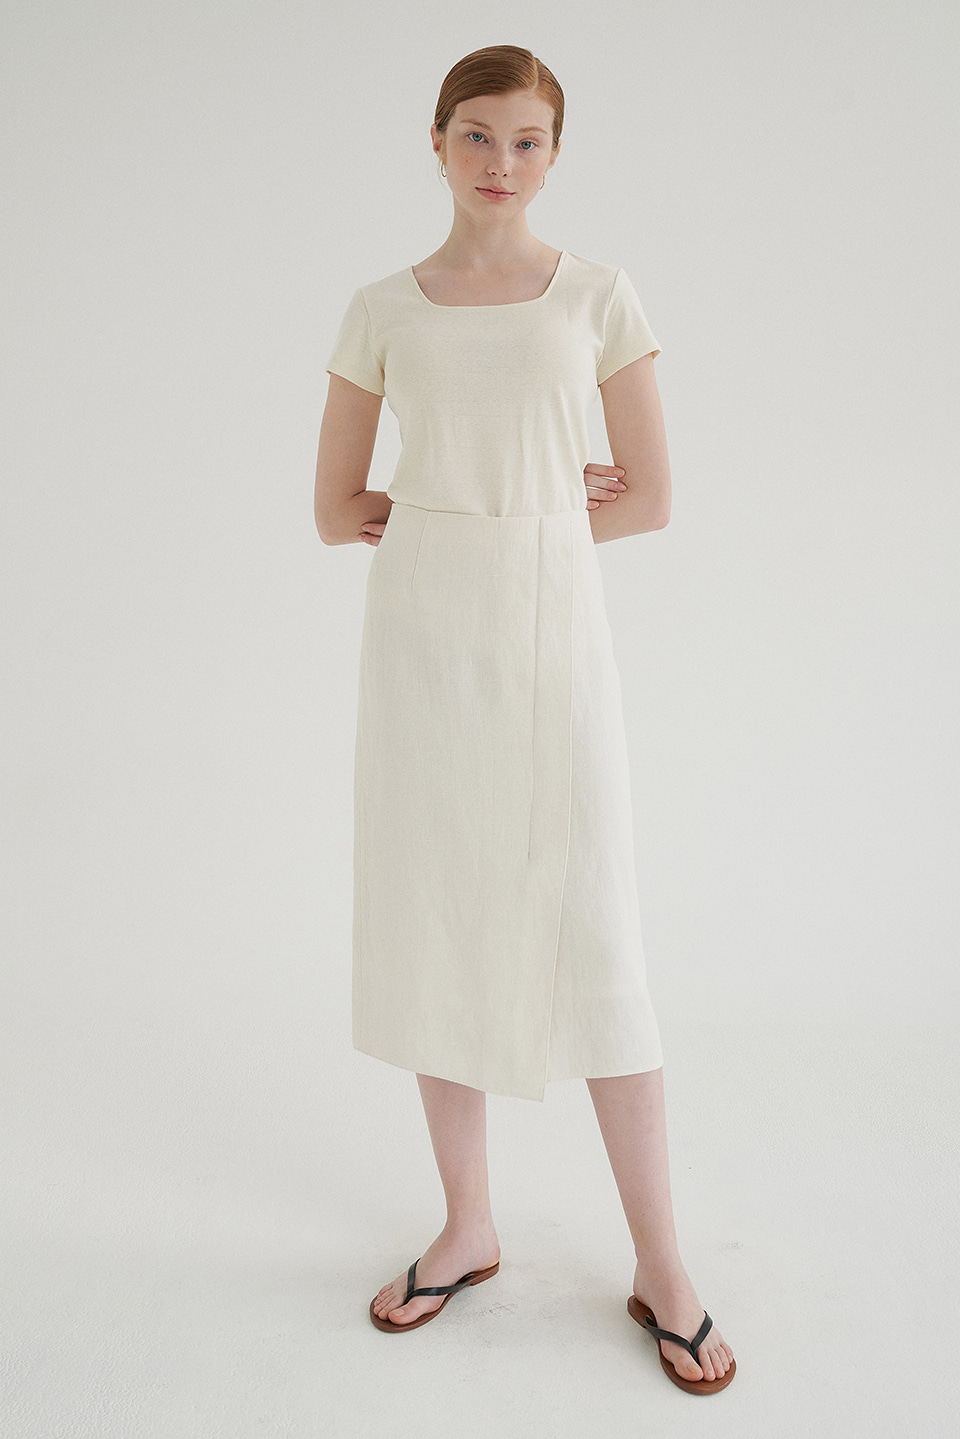 linen wrap skirt (off white)